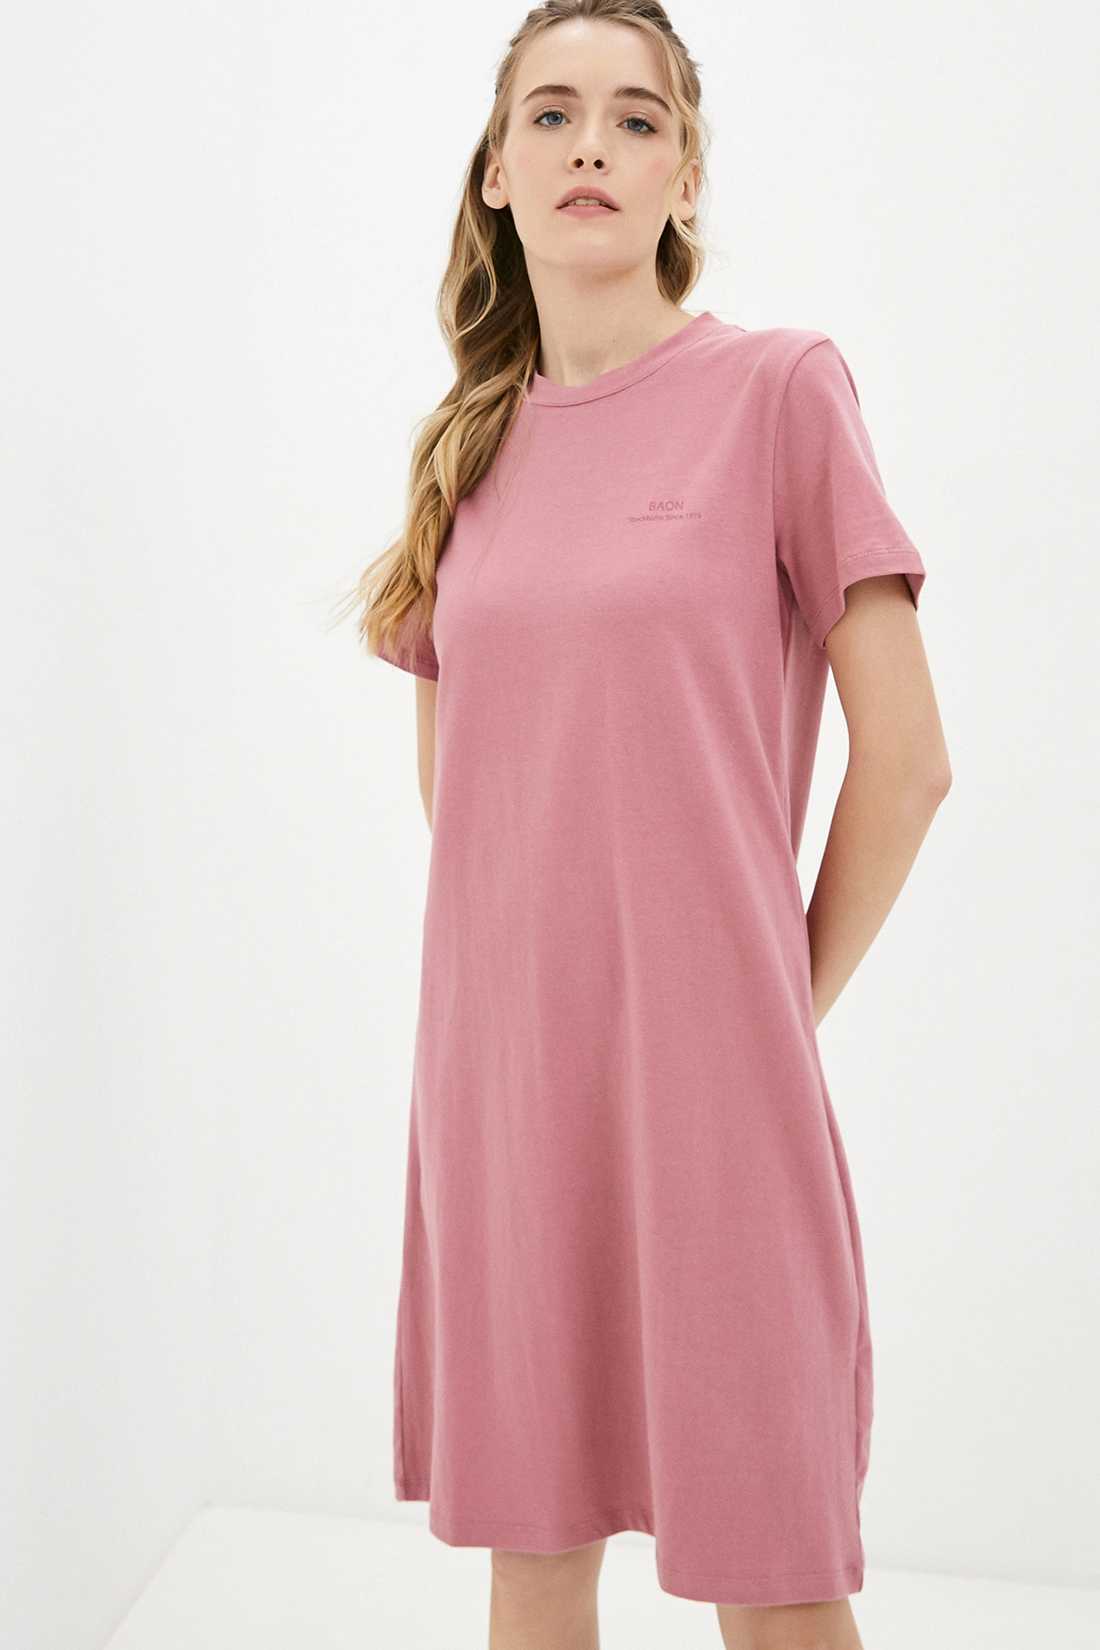 Платье (арт. baon B451033), размер XXL, цвет розовый Платье (арт. baon B451033) - фото 4